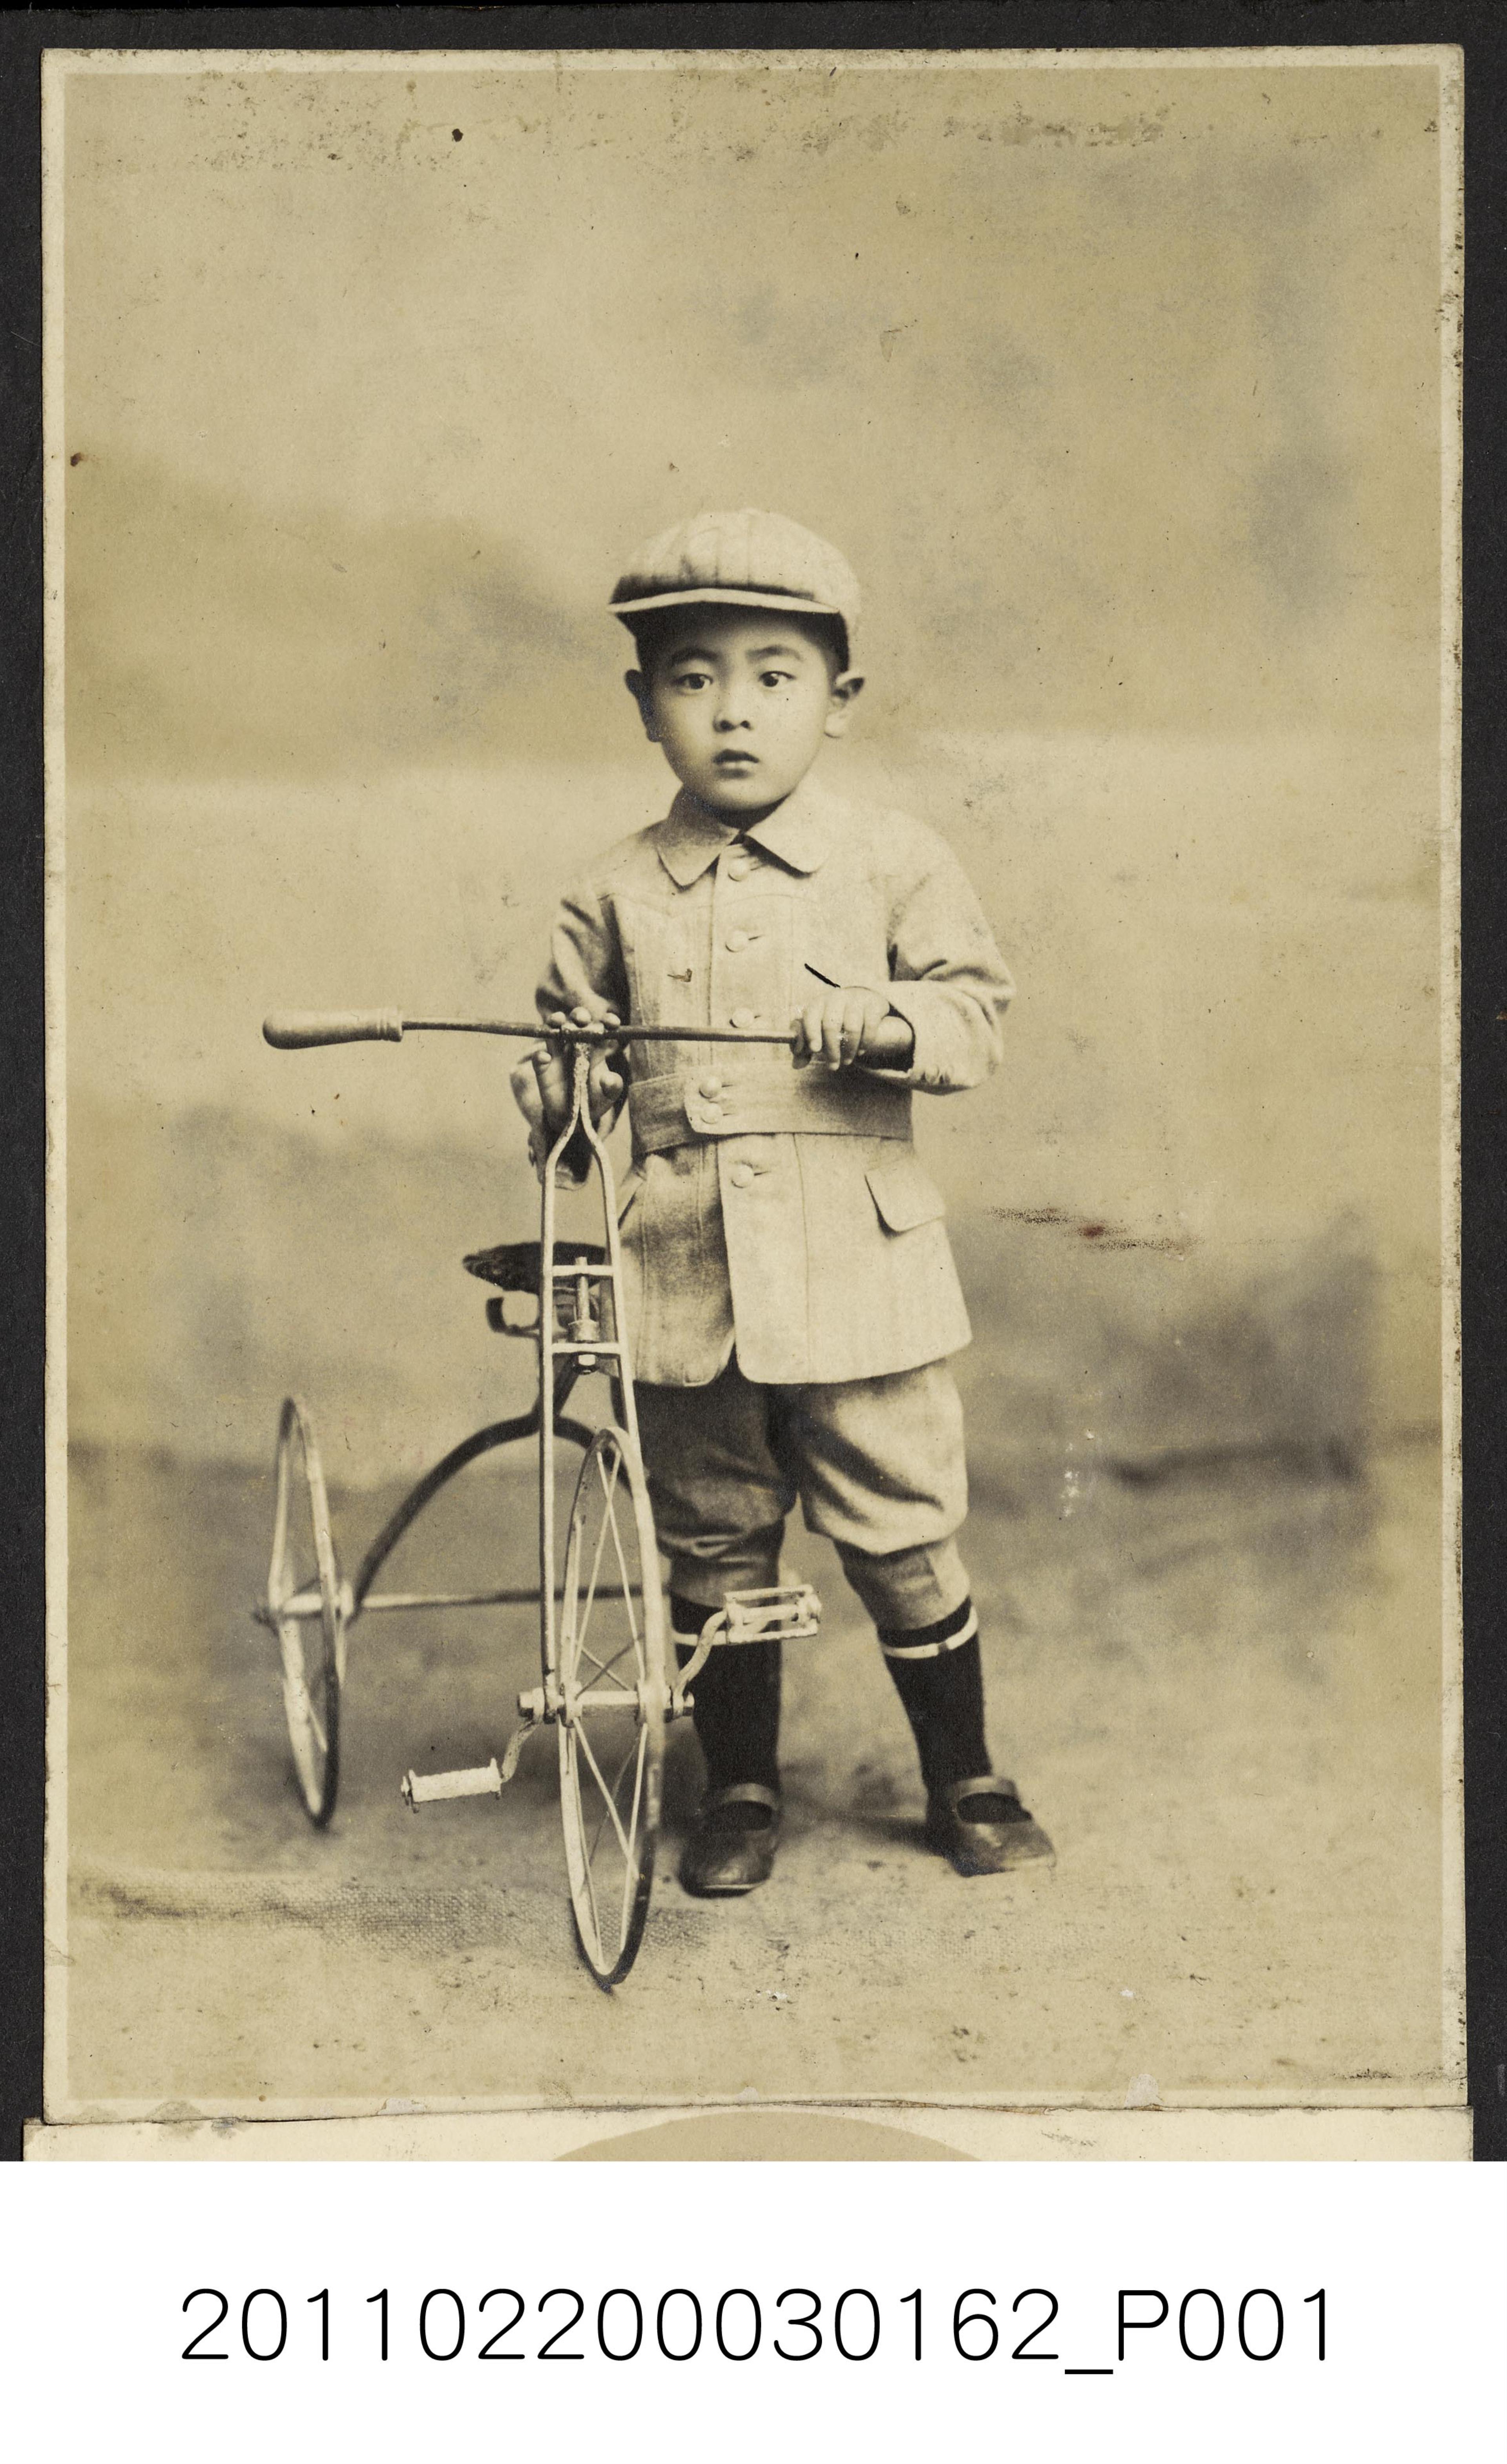 男童與腳踏車合照 (共1張)